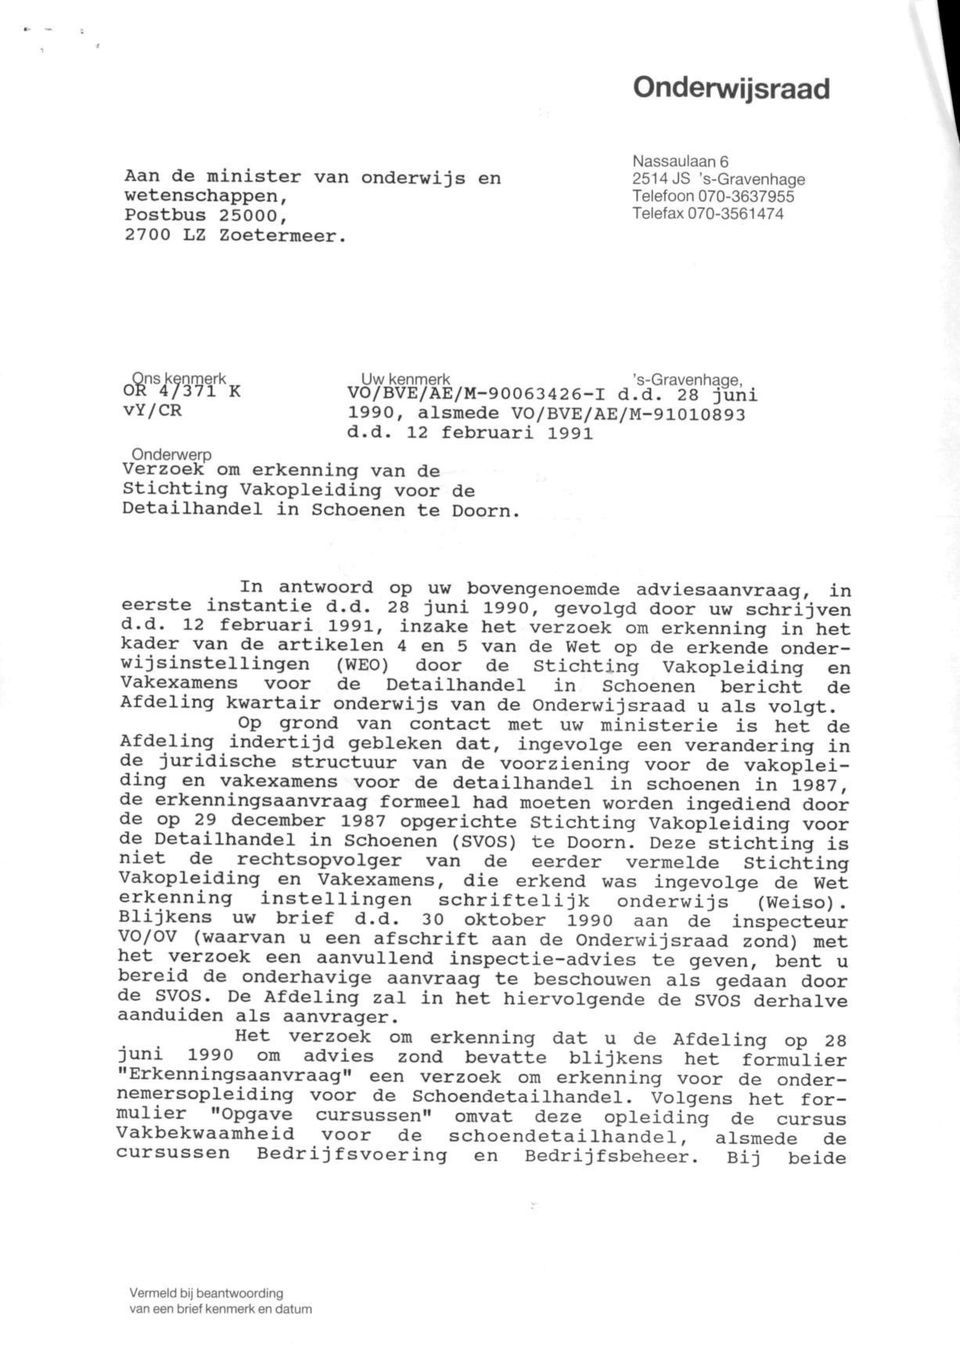 d. 28 juni 1990, alsmede VO/BVE/AE/M-91010893 d.d. 12 februari 1991 Onderwerp Verzoek om erkenning van de Stichting Vakopleiding voor de Detailhandel in Schoenen te Doorn.